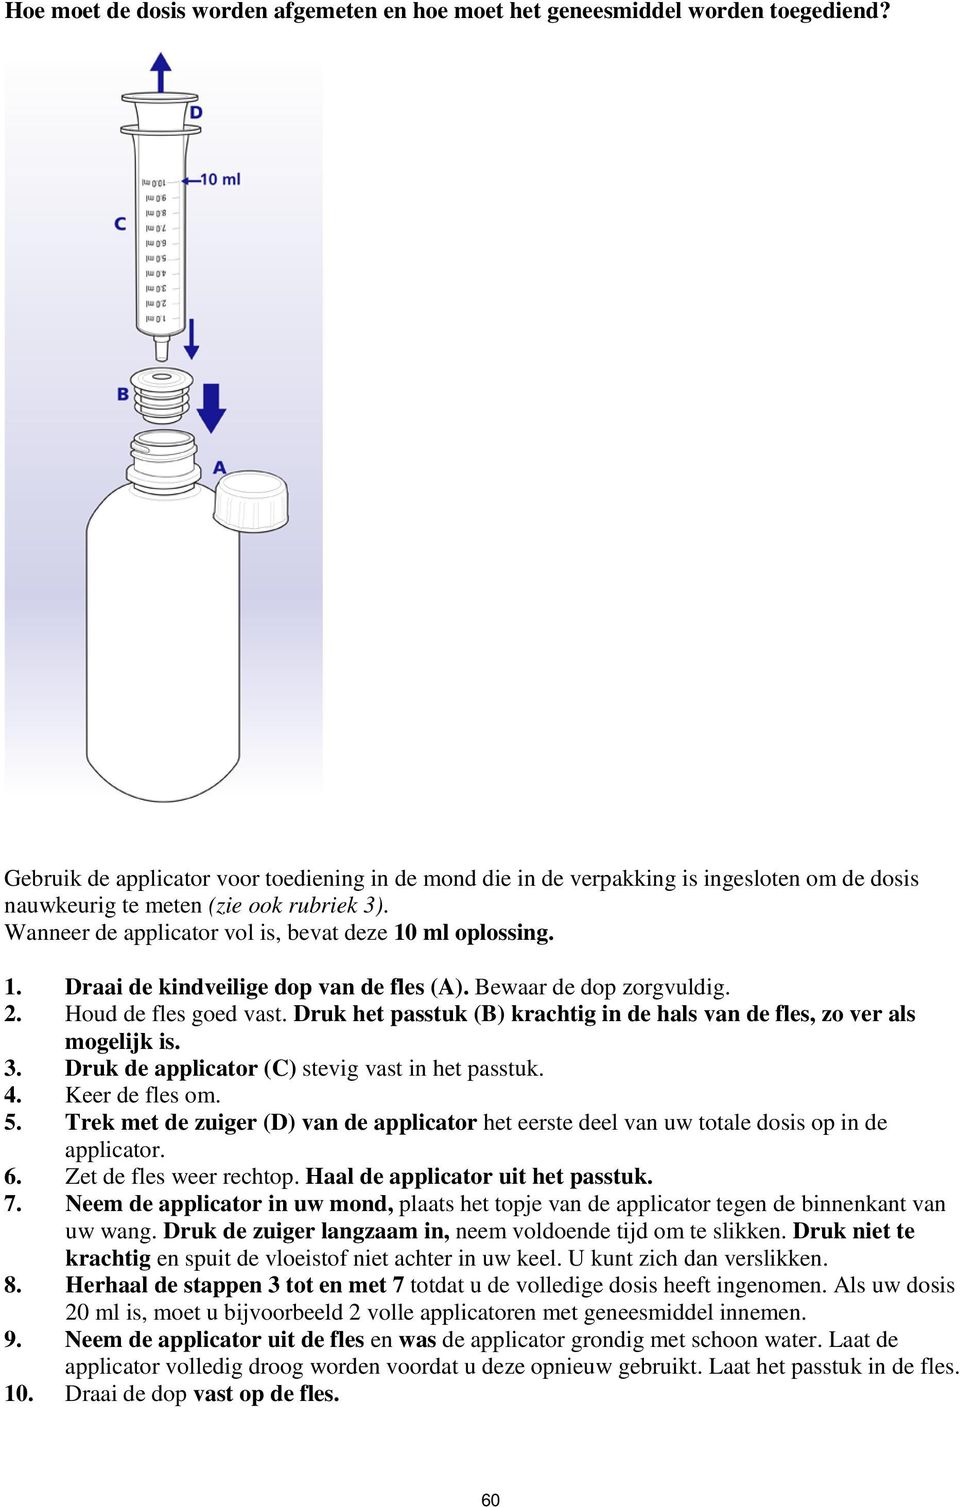 ml oplossing. 1. Draai de kindveilige dop van de fles (A). Bewaar de dop zorgvuldig. 2. Houd de fles goed vast. Druk het passtuk (B) krachtig in de hals van de fles, zo ver als mogelijk is. 3.